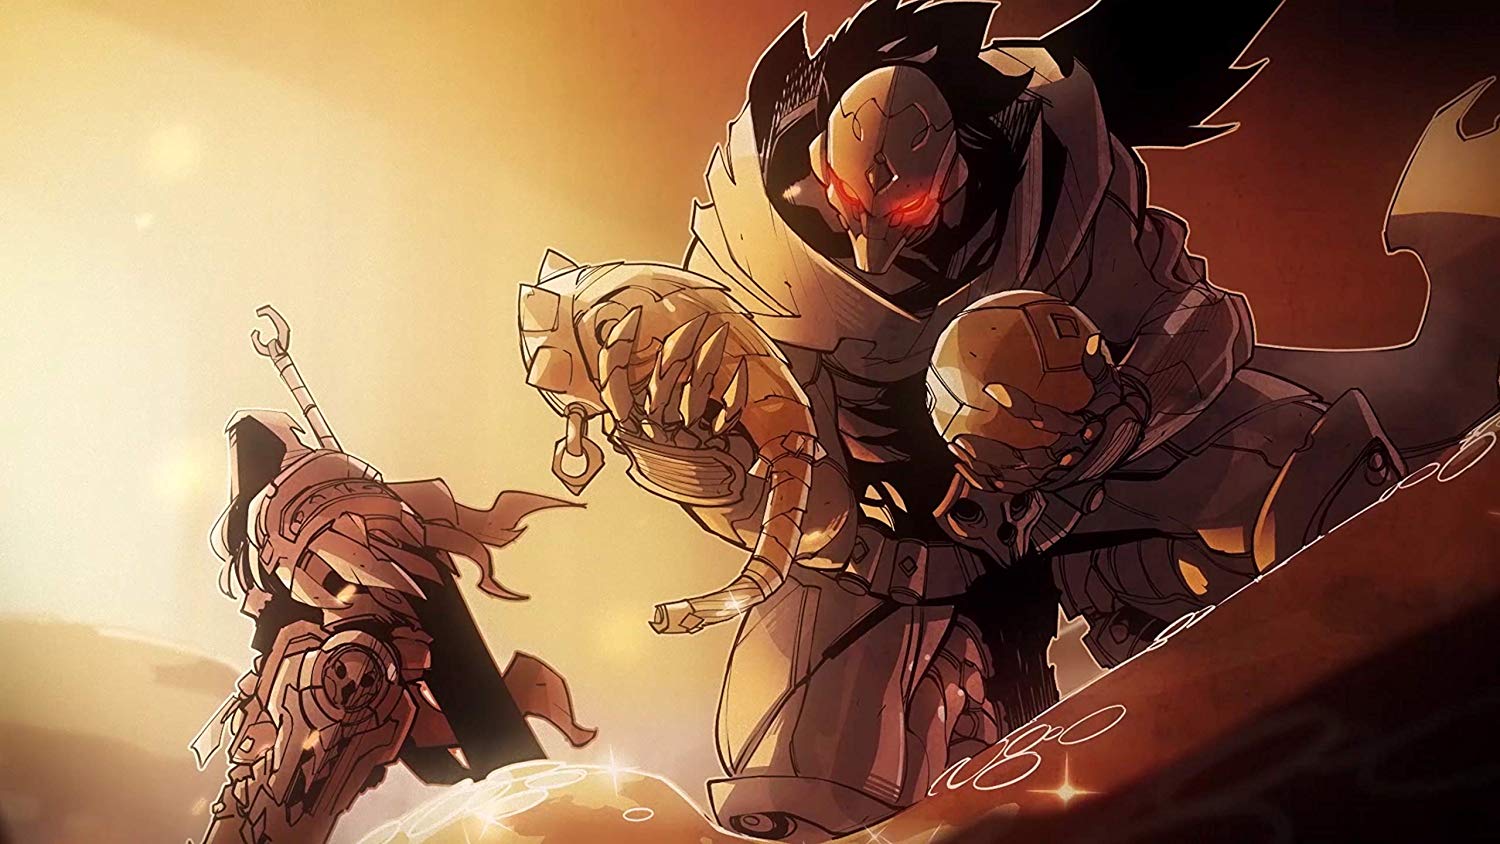 THQ анонсувала Darksiders Genesis - перезапуск серії у стилі Diablo